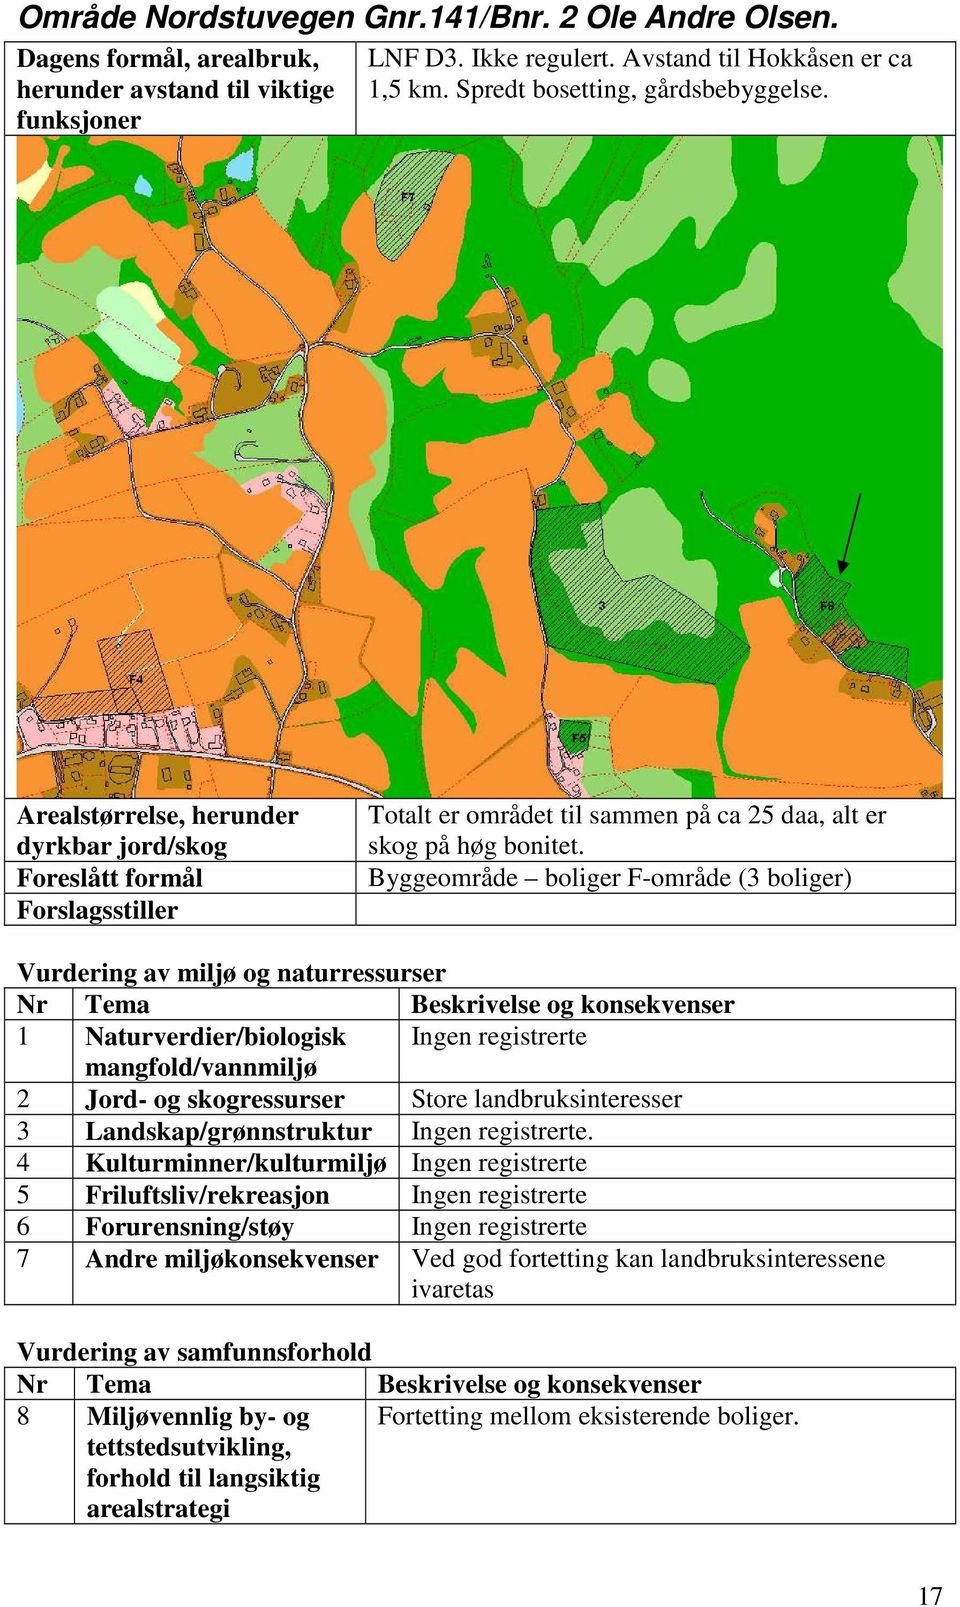 Byggeområde boliger F-område (3 boliger) Vurdering av miljø og naturressurser 1 Naturverdier/biologisk Ingen registrerte mangfold/vannmiljø 2 Jord- og skogressurser Store landbruksinteresser 3